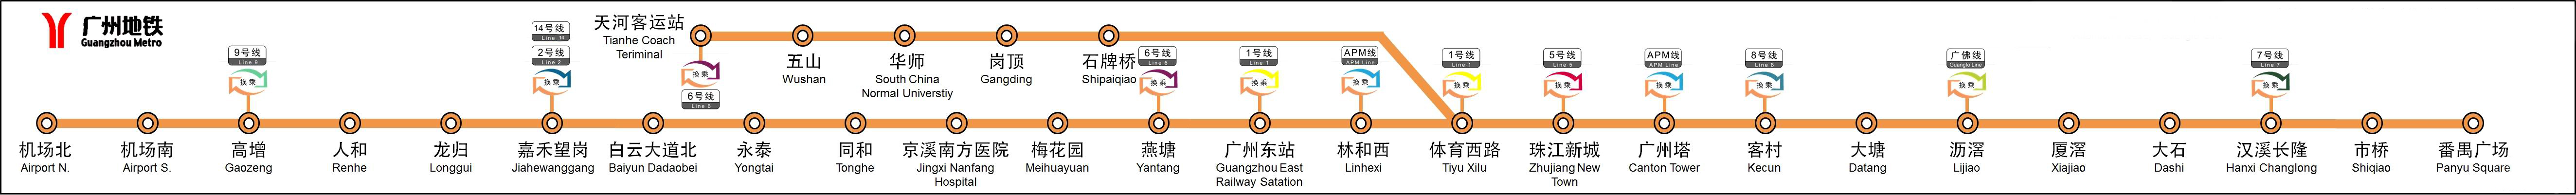 廣州捷運3號線線路圖